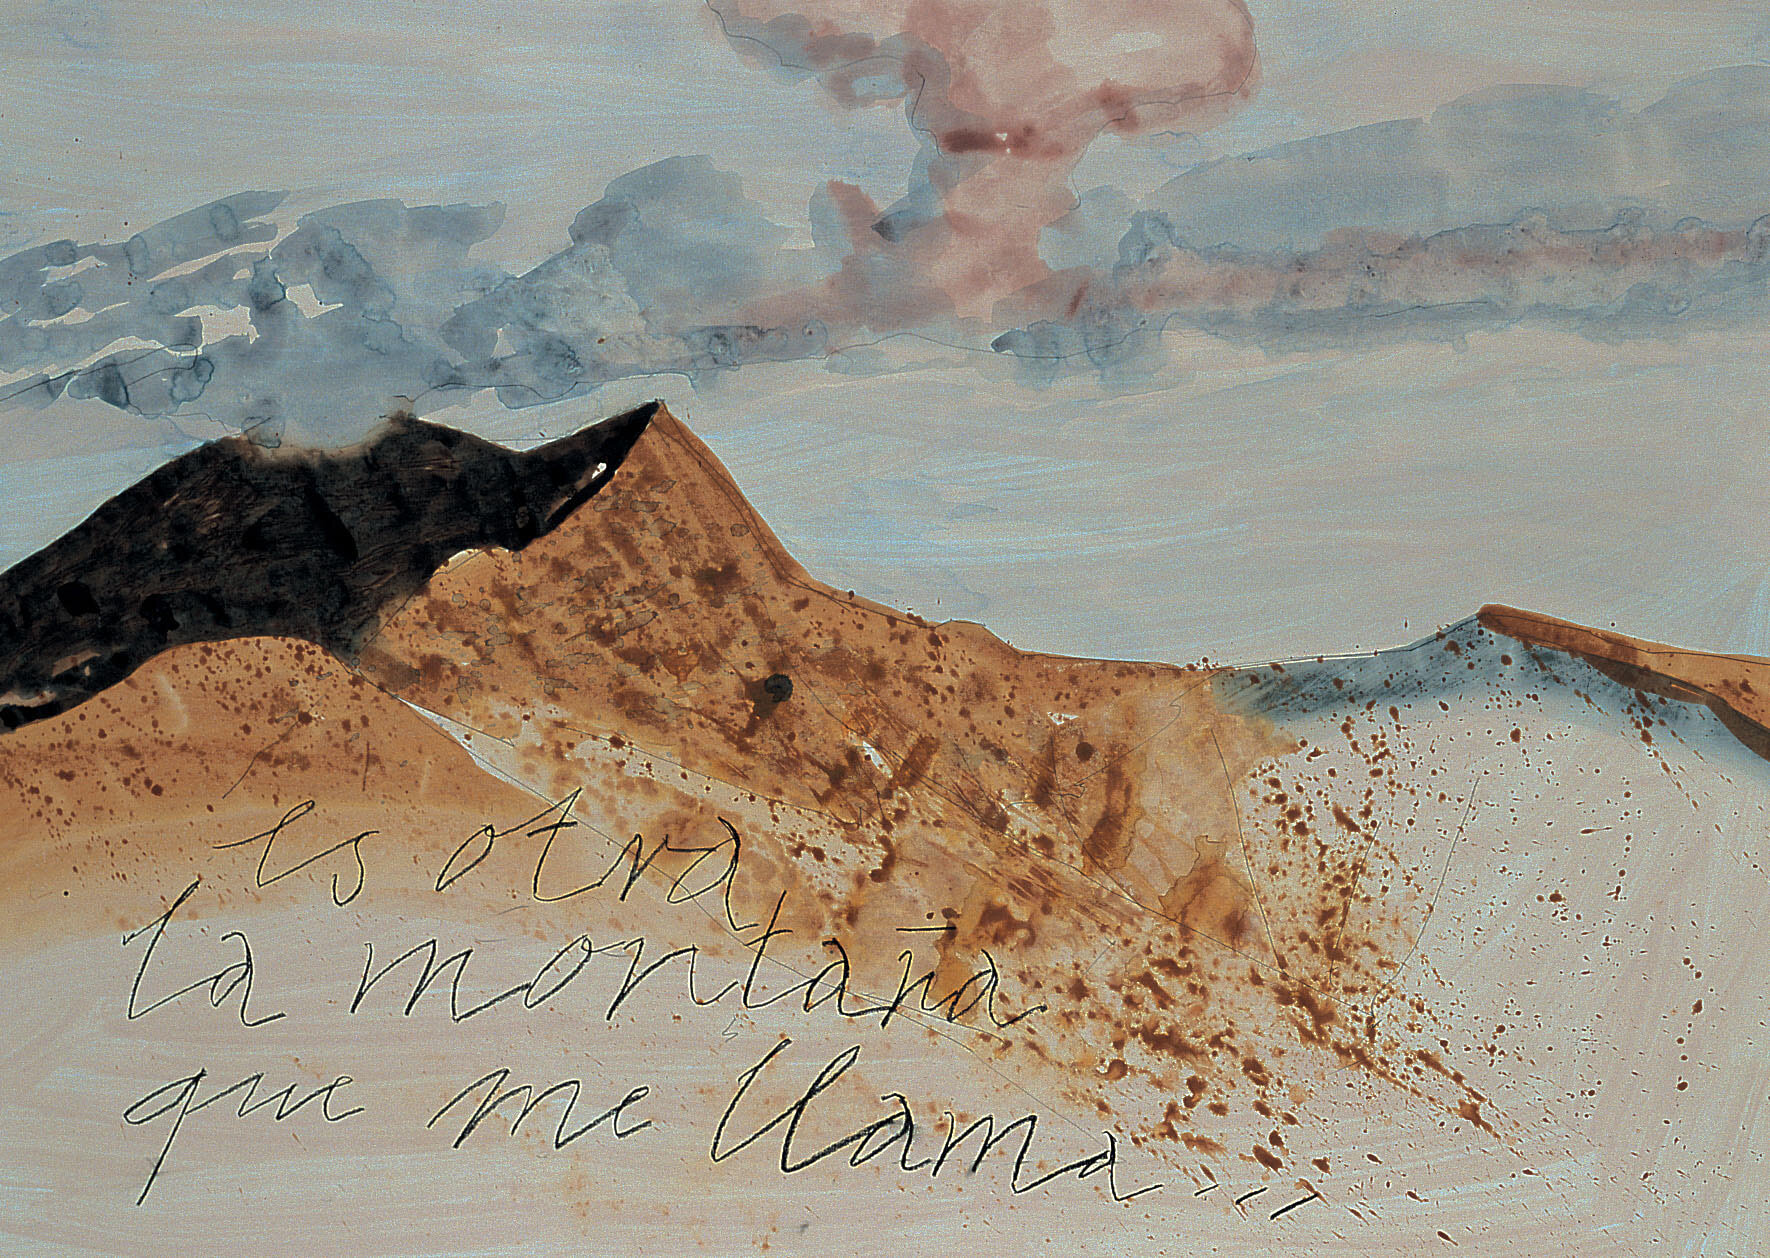 la nube toca la montaña (Wolke berührt den Berg), 2000